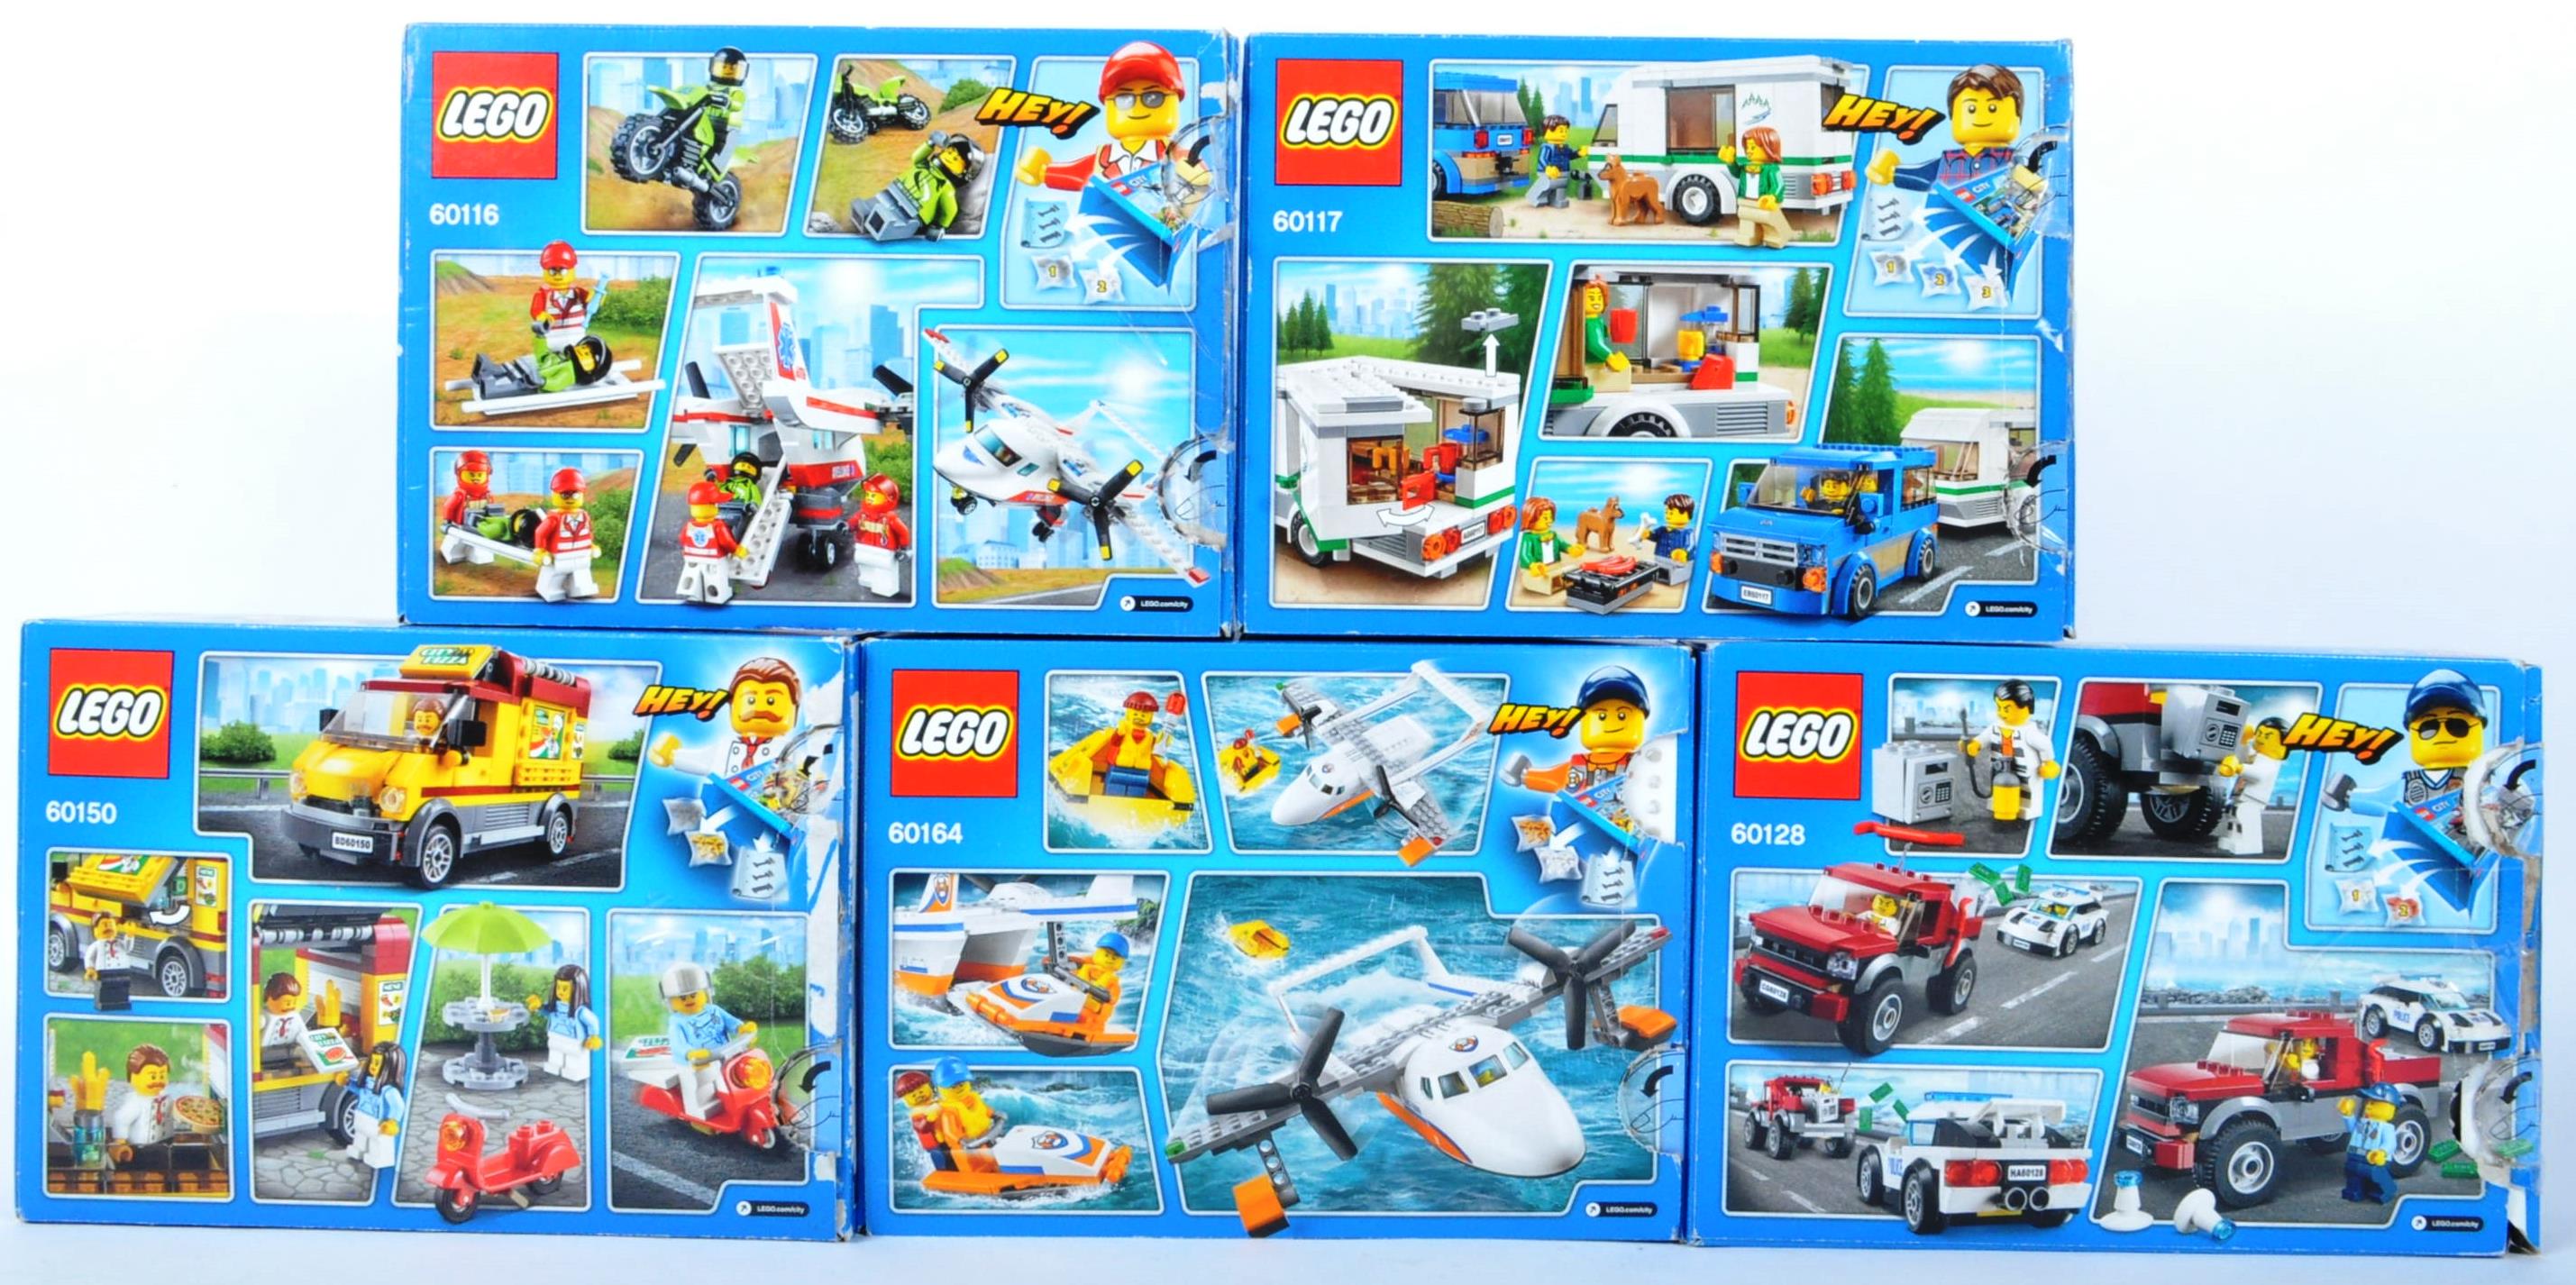 LEGO SETS - LEGO CITY - 60116 -60117 - 60128 - 60150 - 60164 - Image 2 of 3